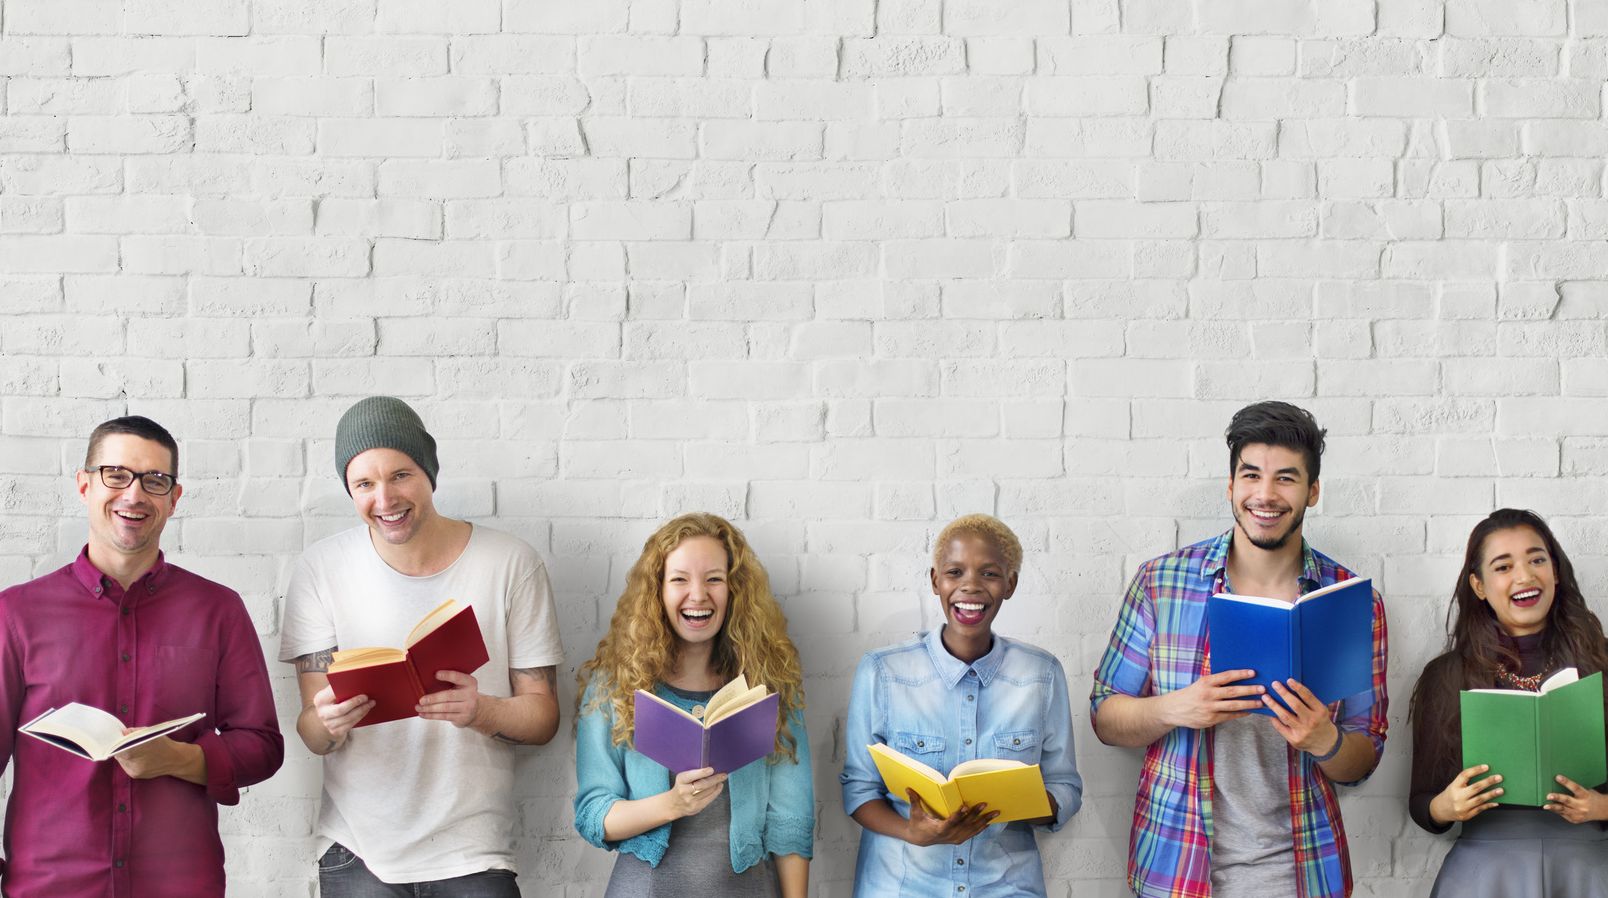 Sechs Personen stehen nebeneinander an einer Wand, lachen und halten ein Buch in der Hand.